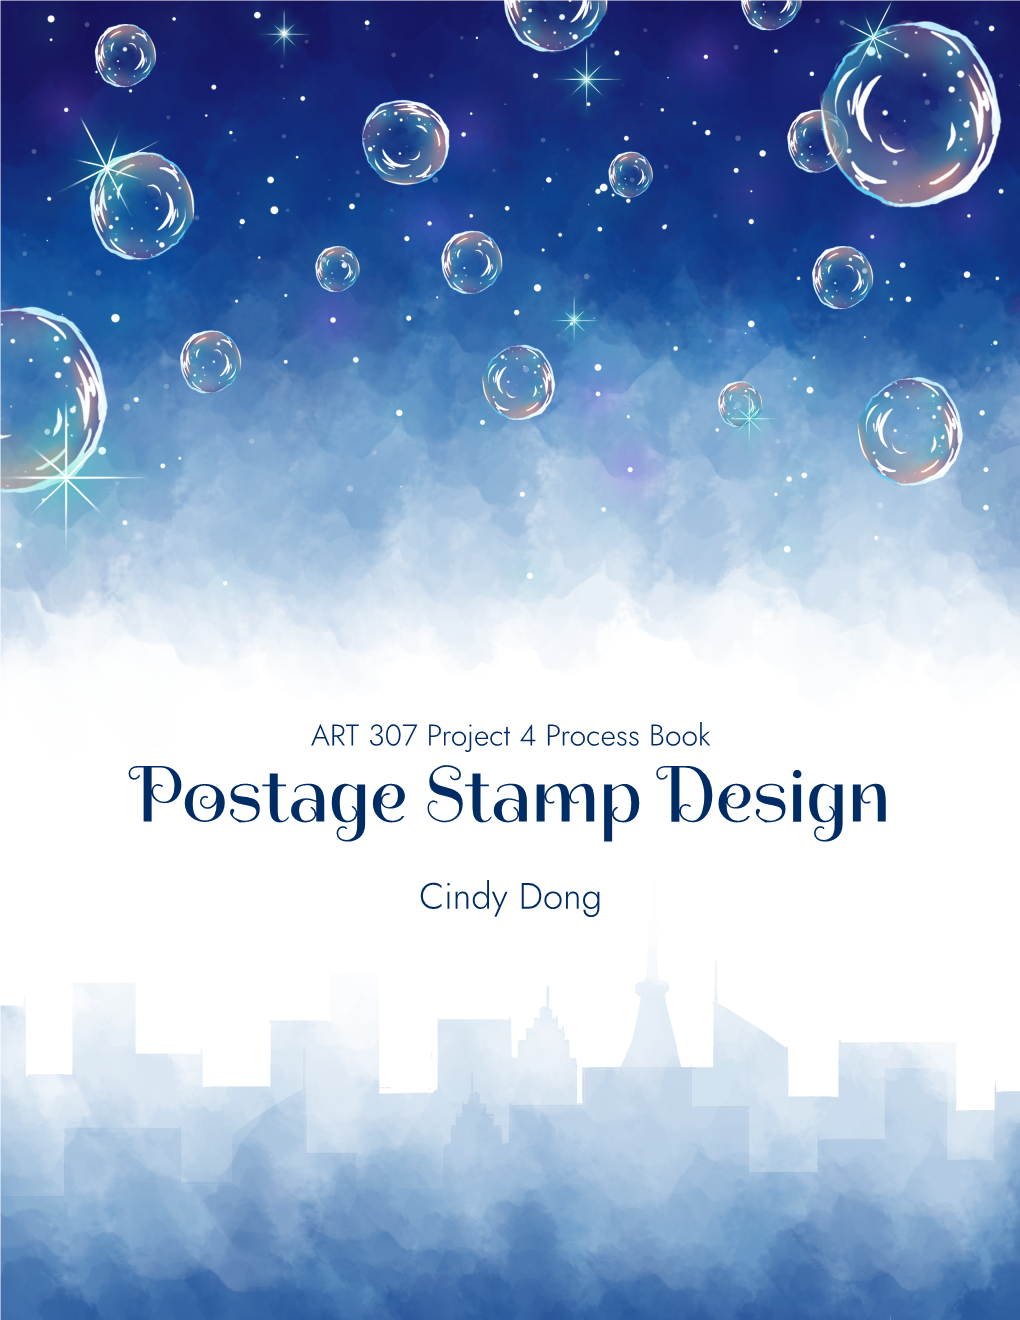 Postage Stamp Design